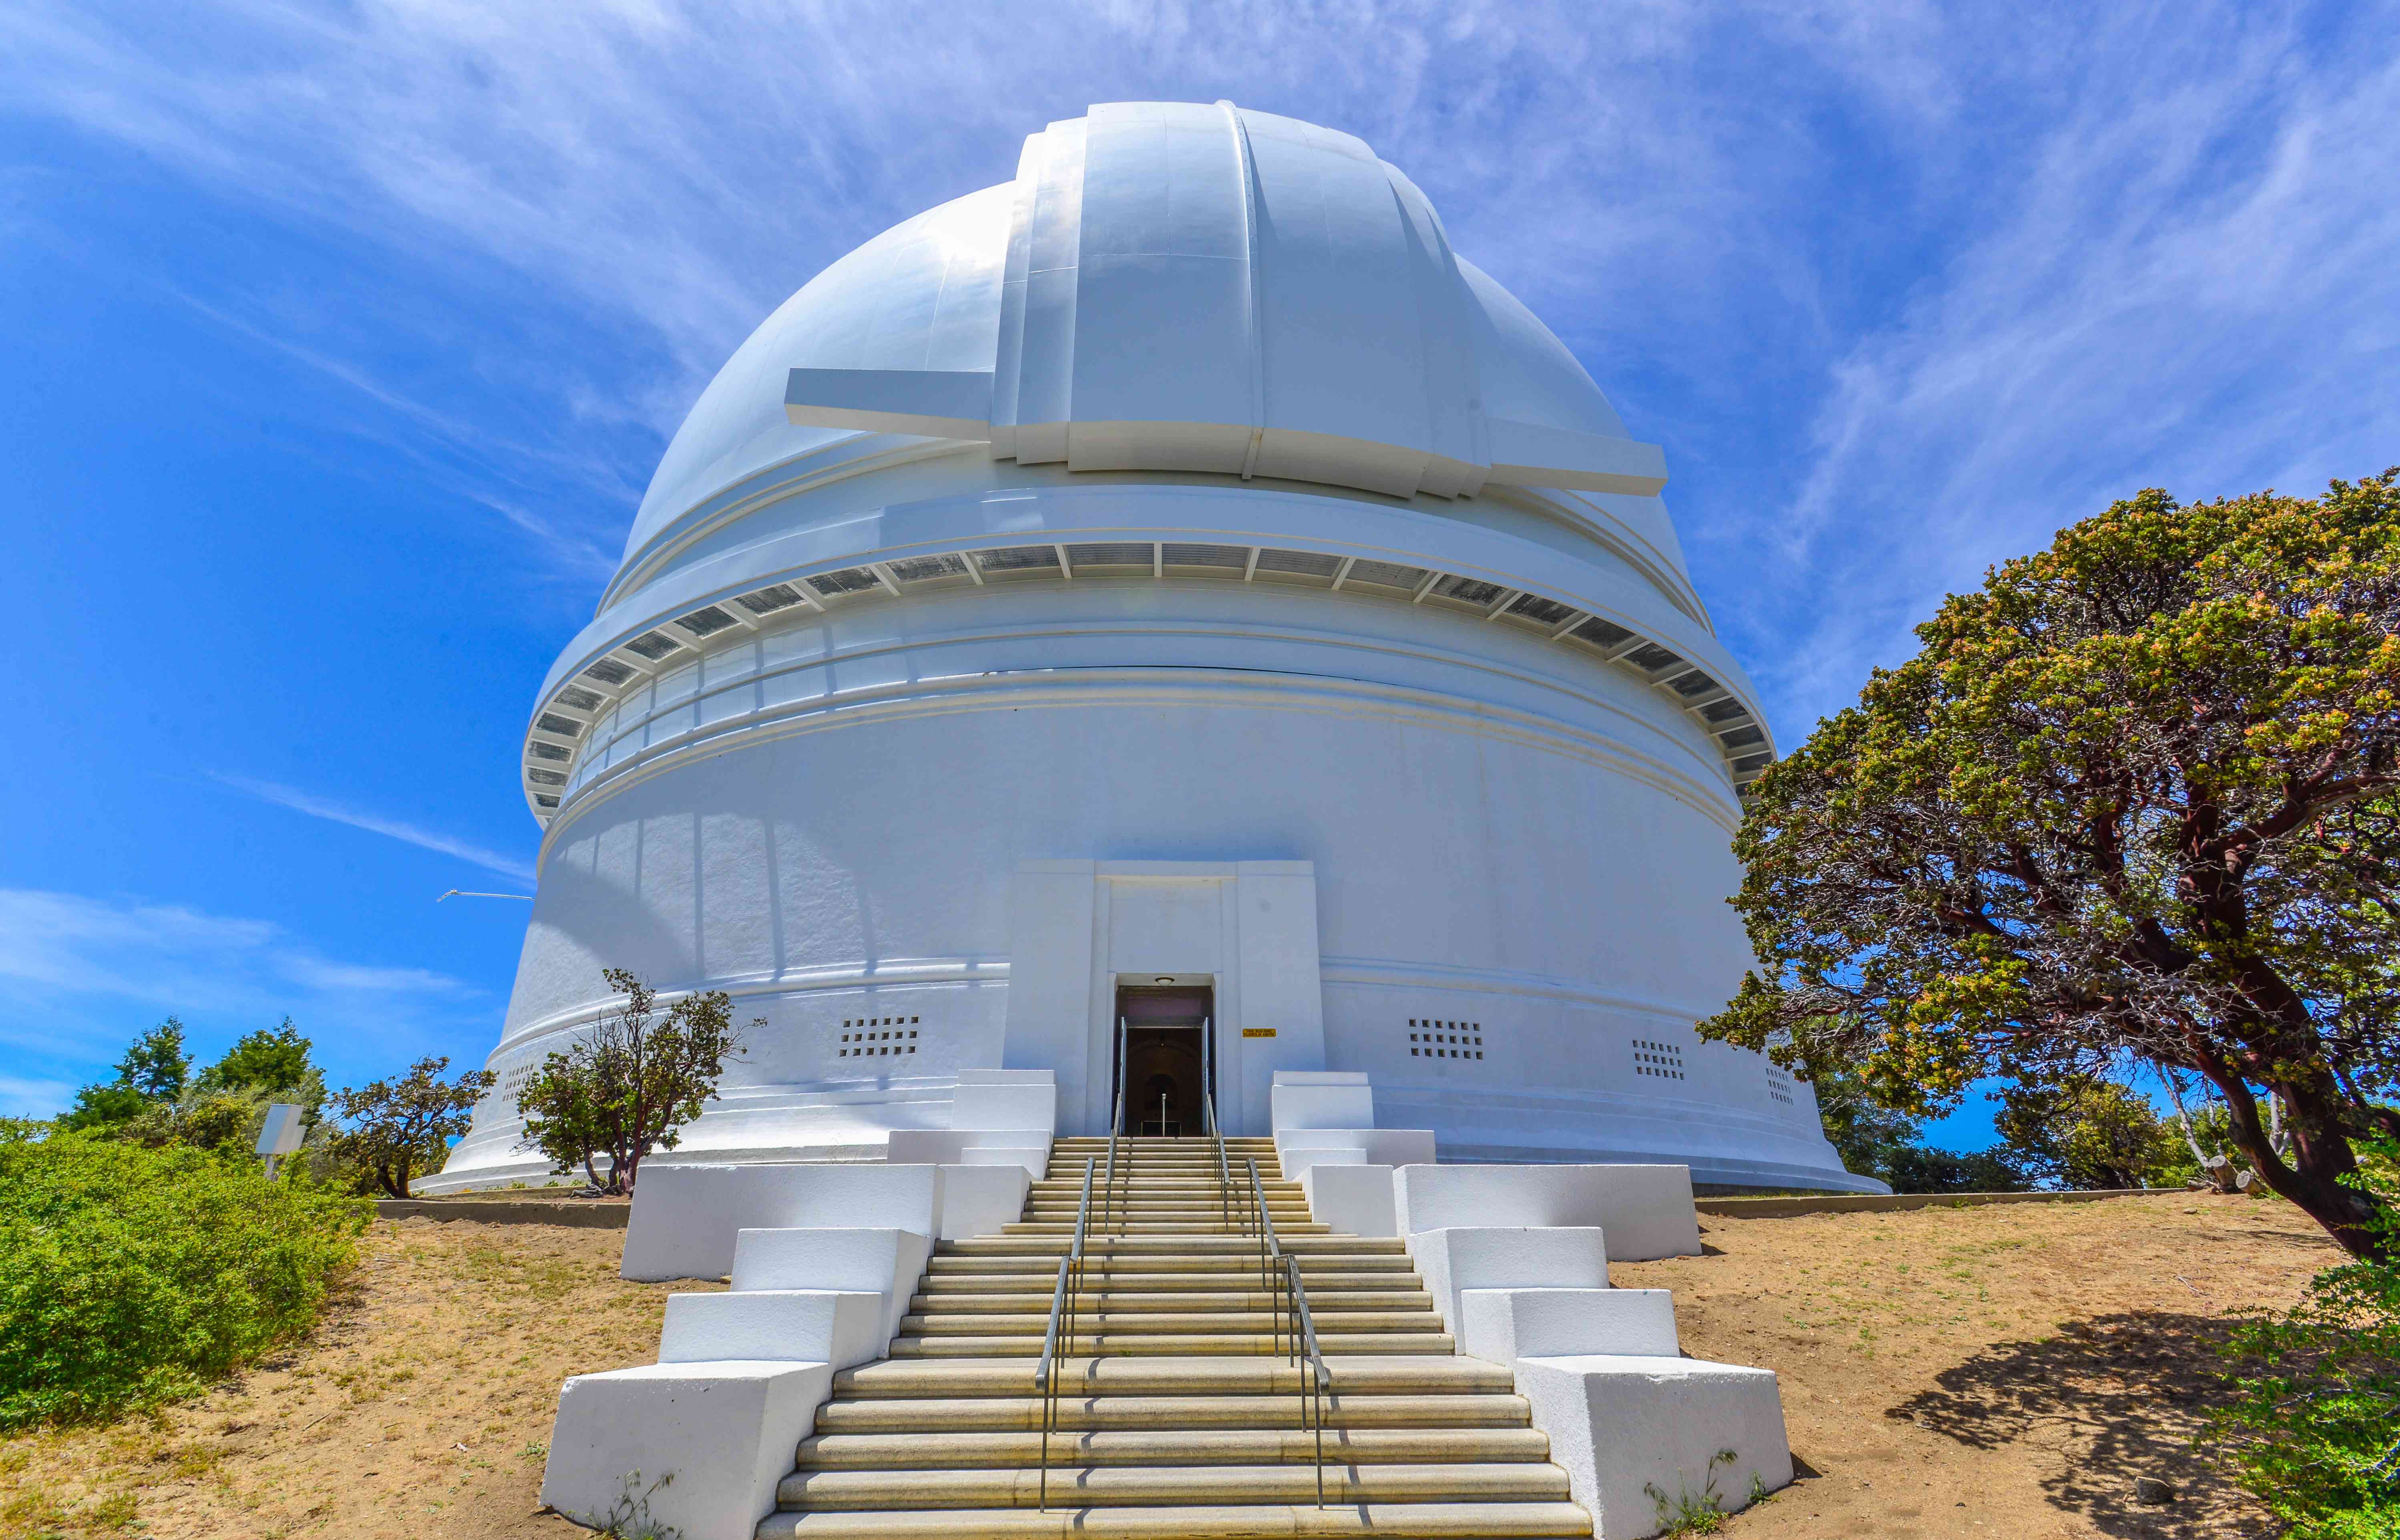 帕洛玛天文台的白色圆顶形状与蓝天